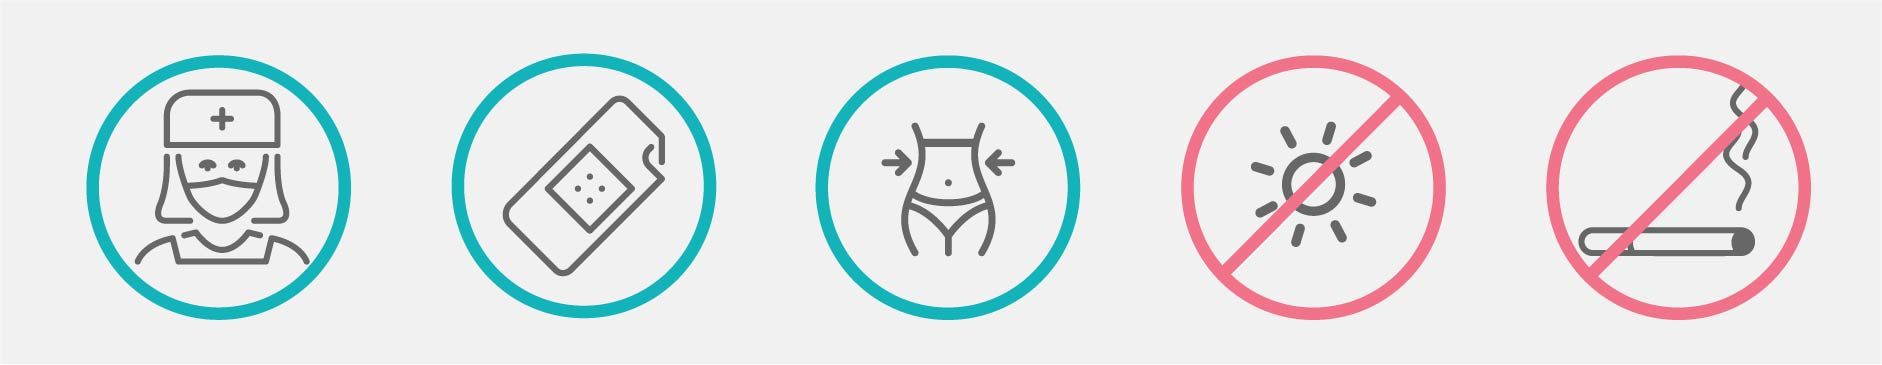 datos sobre la recuperación de la abdominoplastia